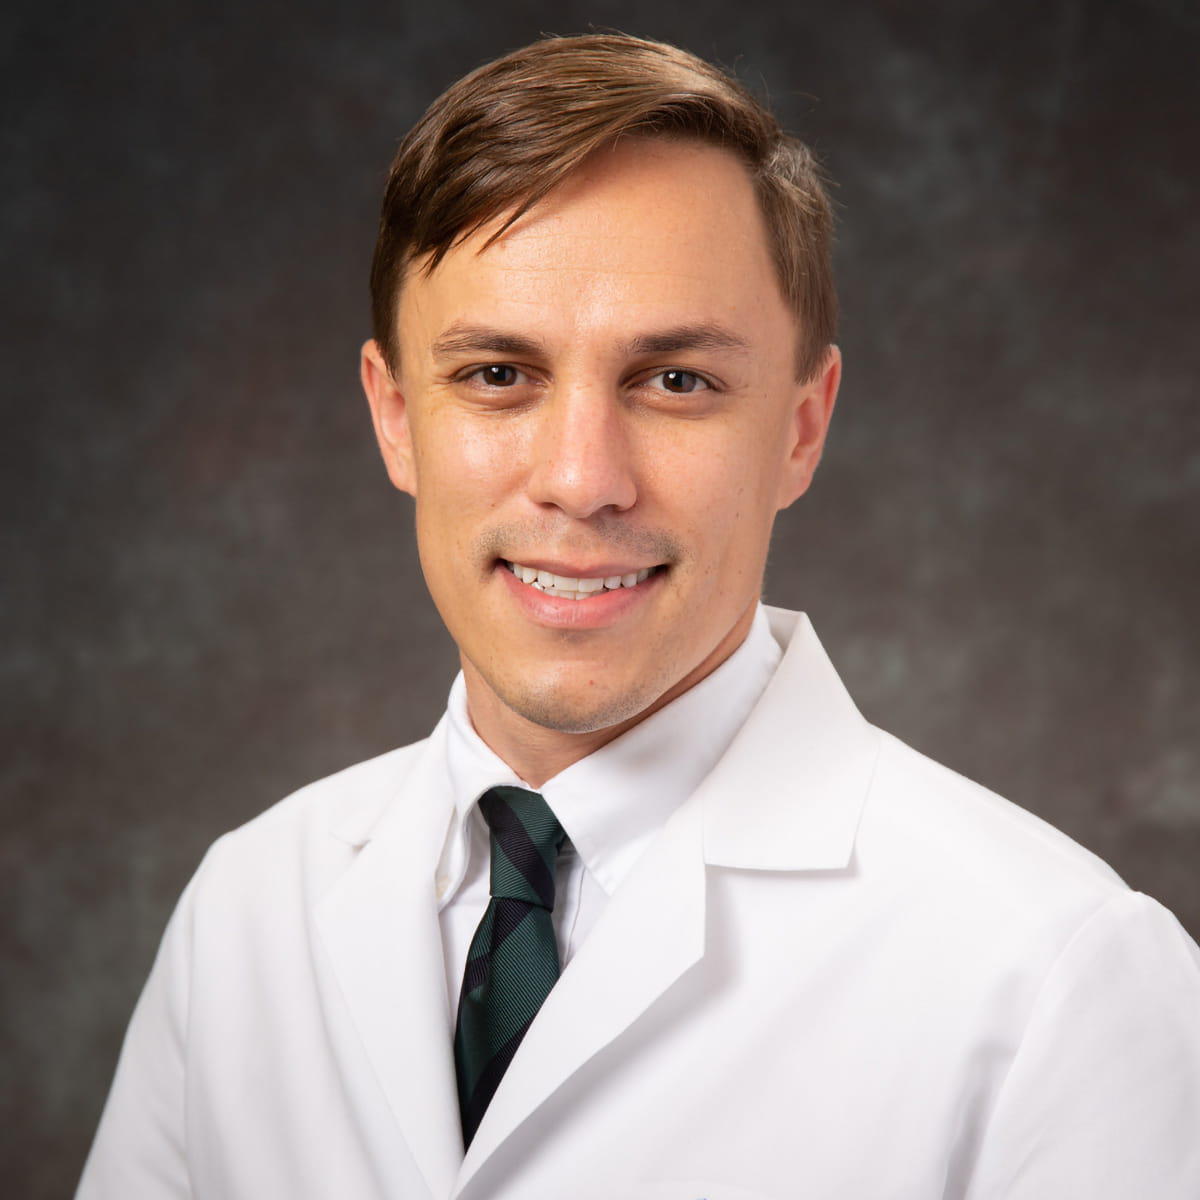 Robert Steven Gerhard Urology and Urologist